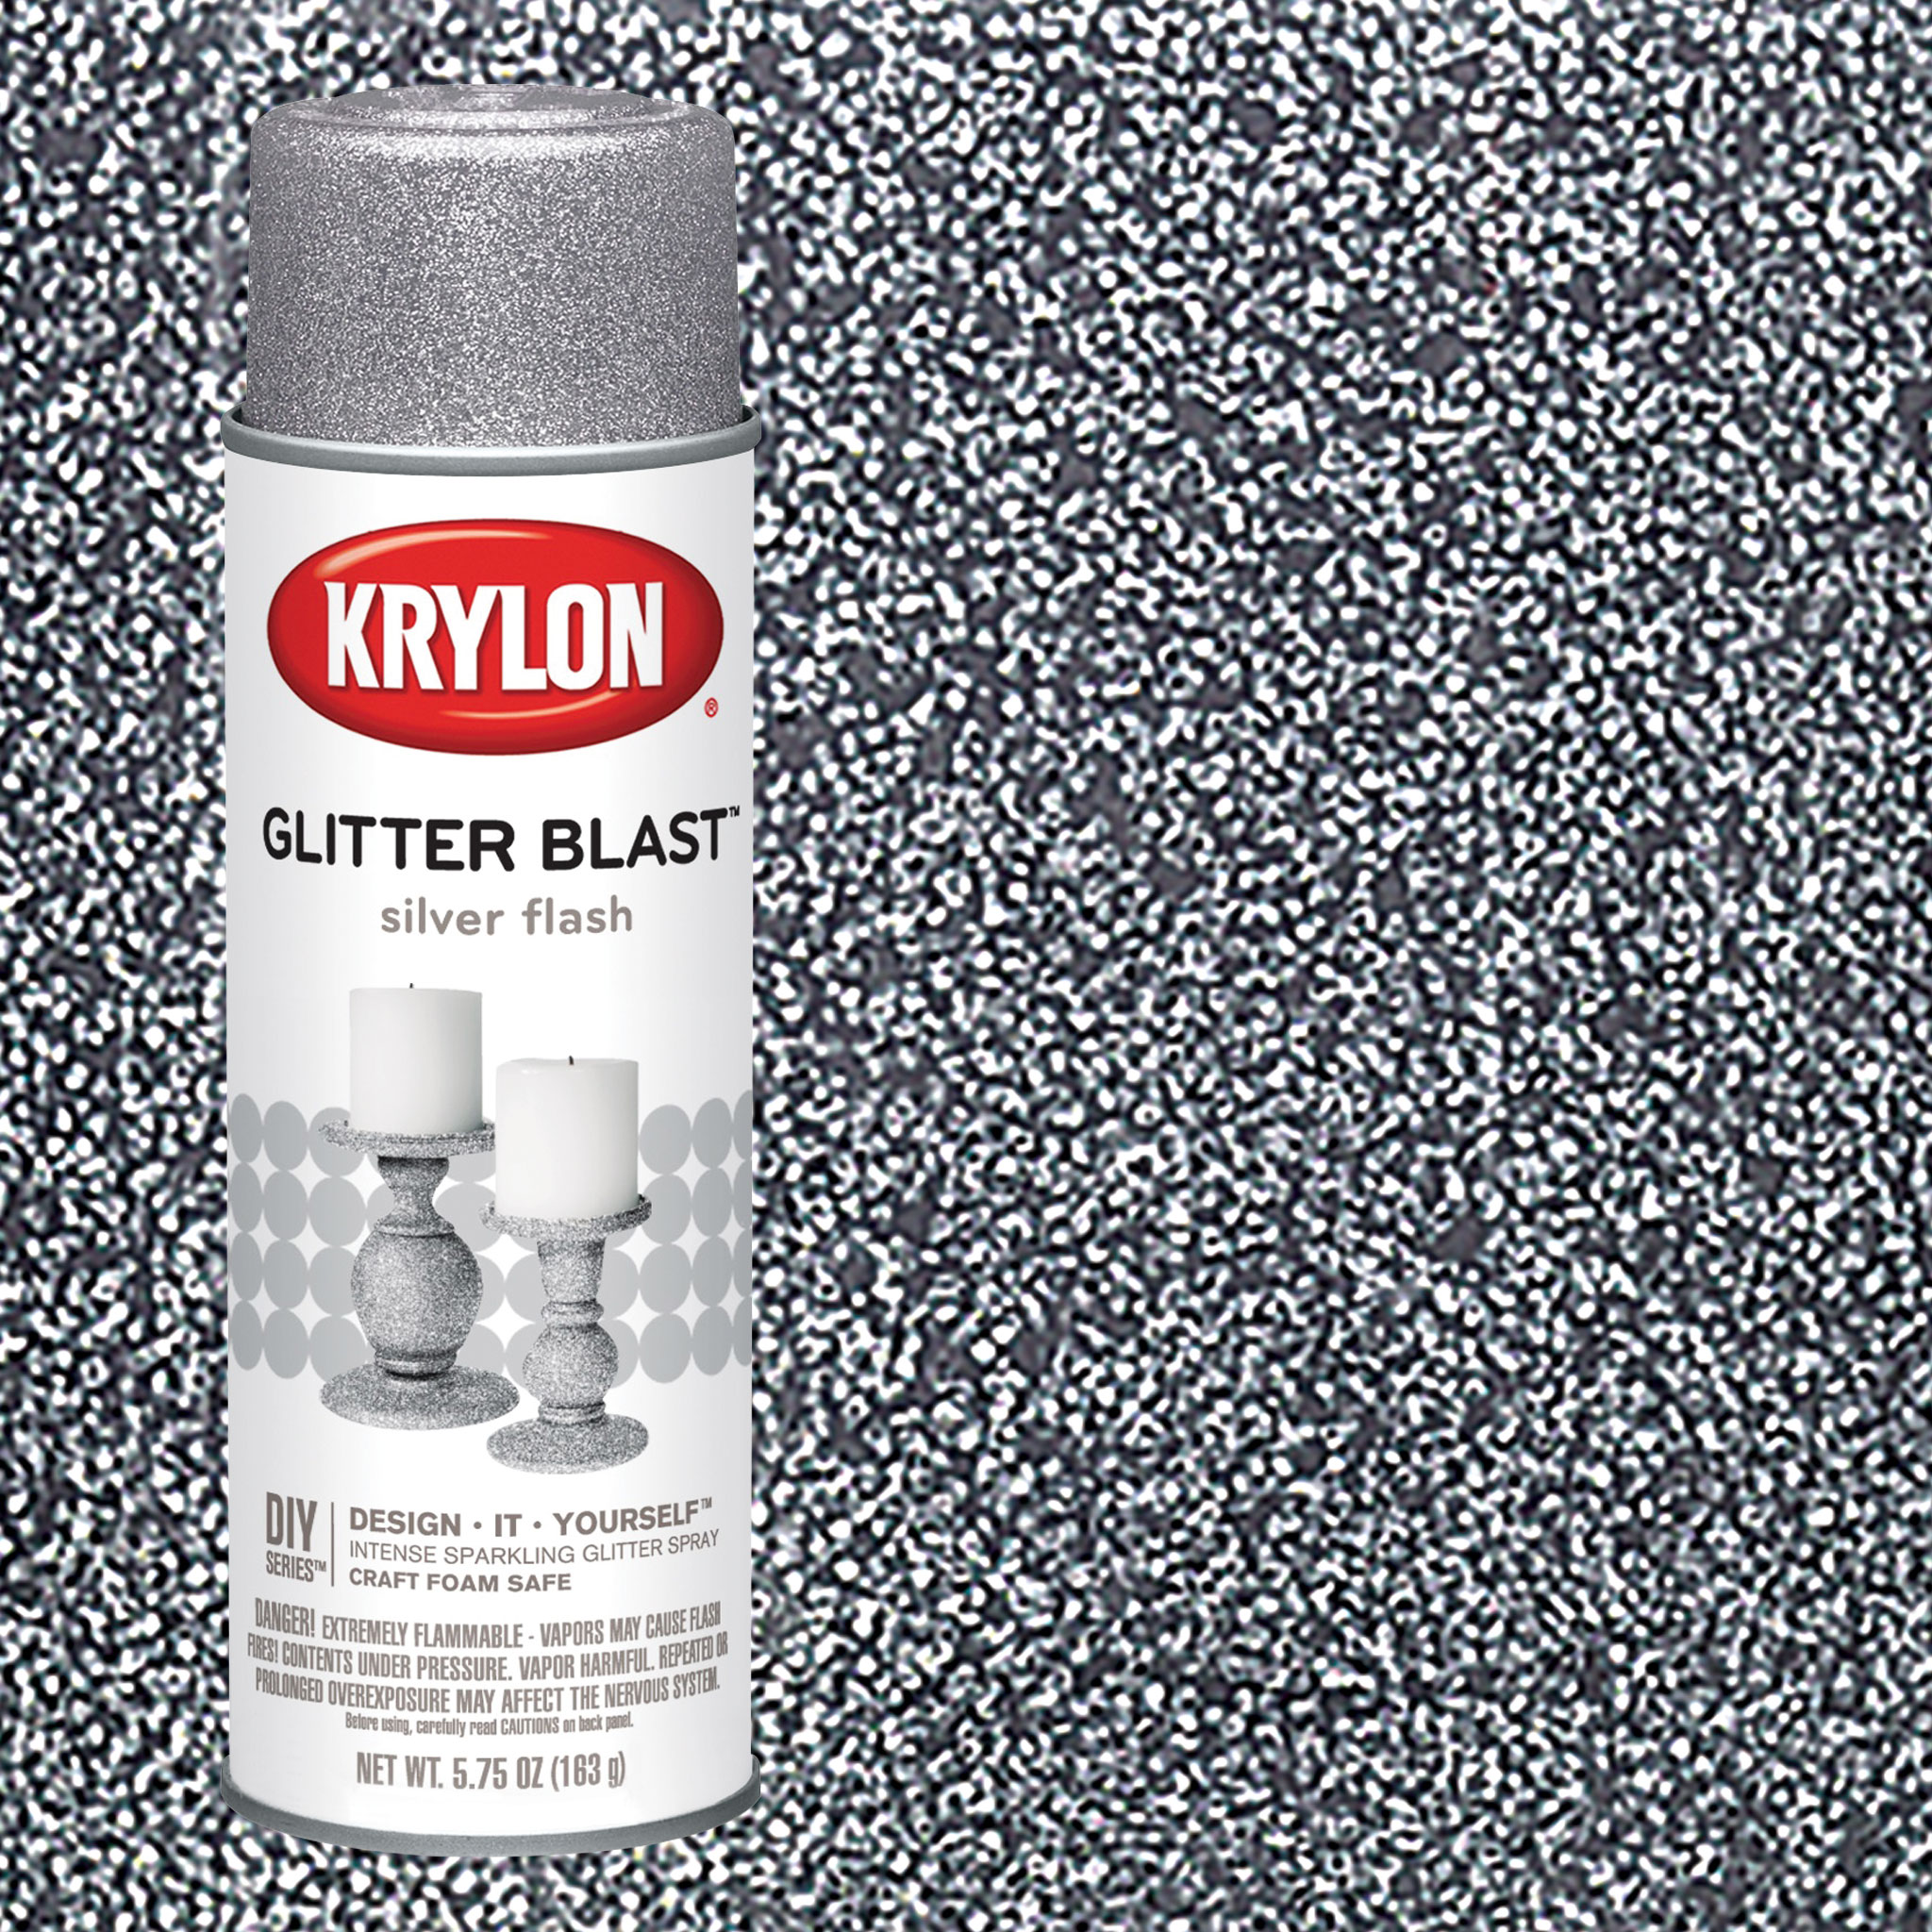  Krylon K03801A00 Glitter Blast Glitter Spray Paint for